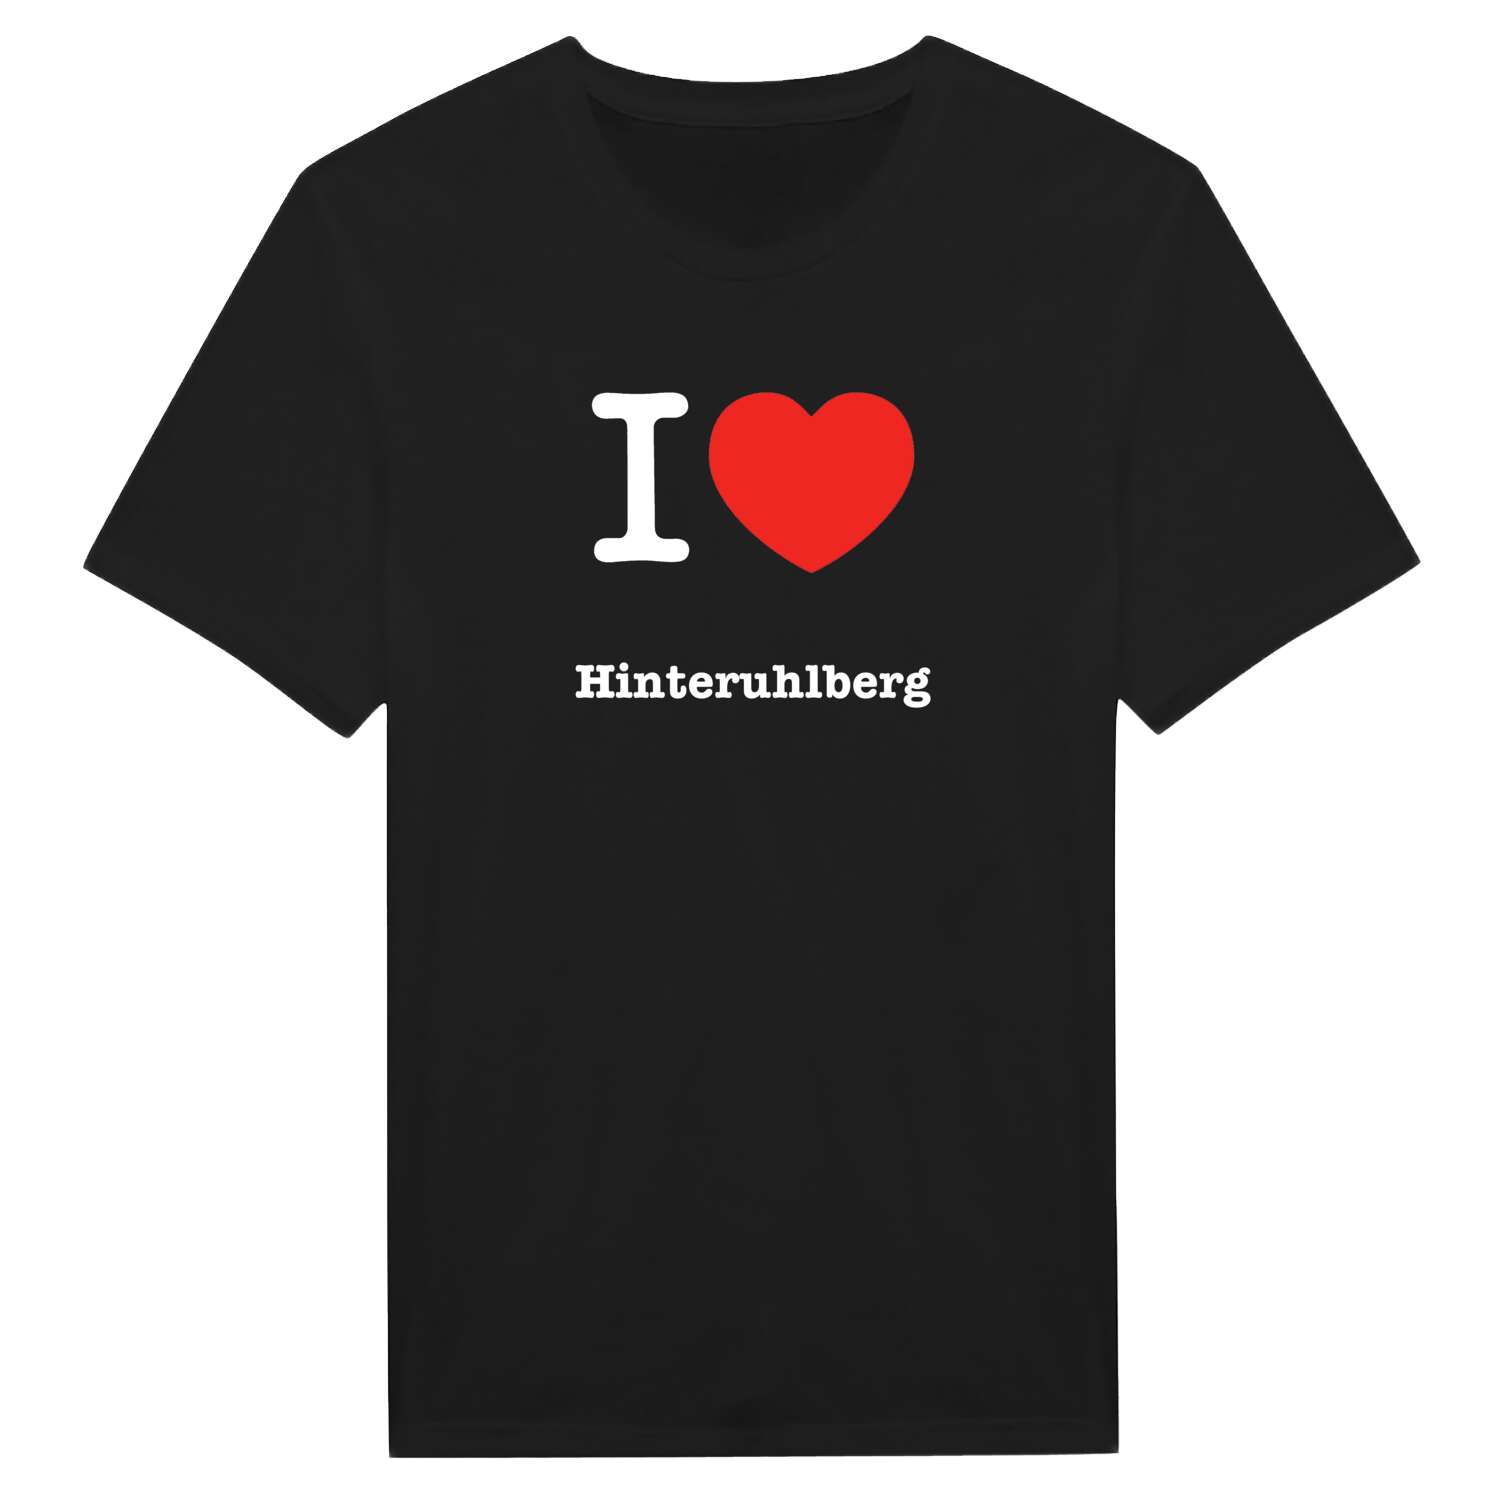 Hinteruhlberg T-Shirt »I love«